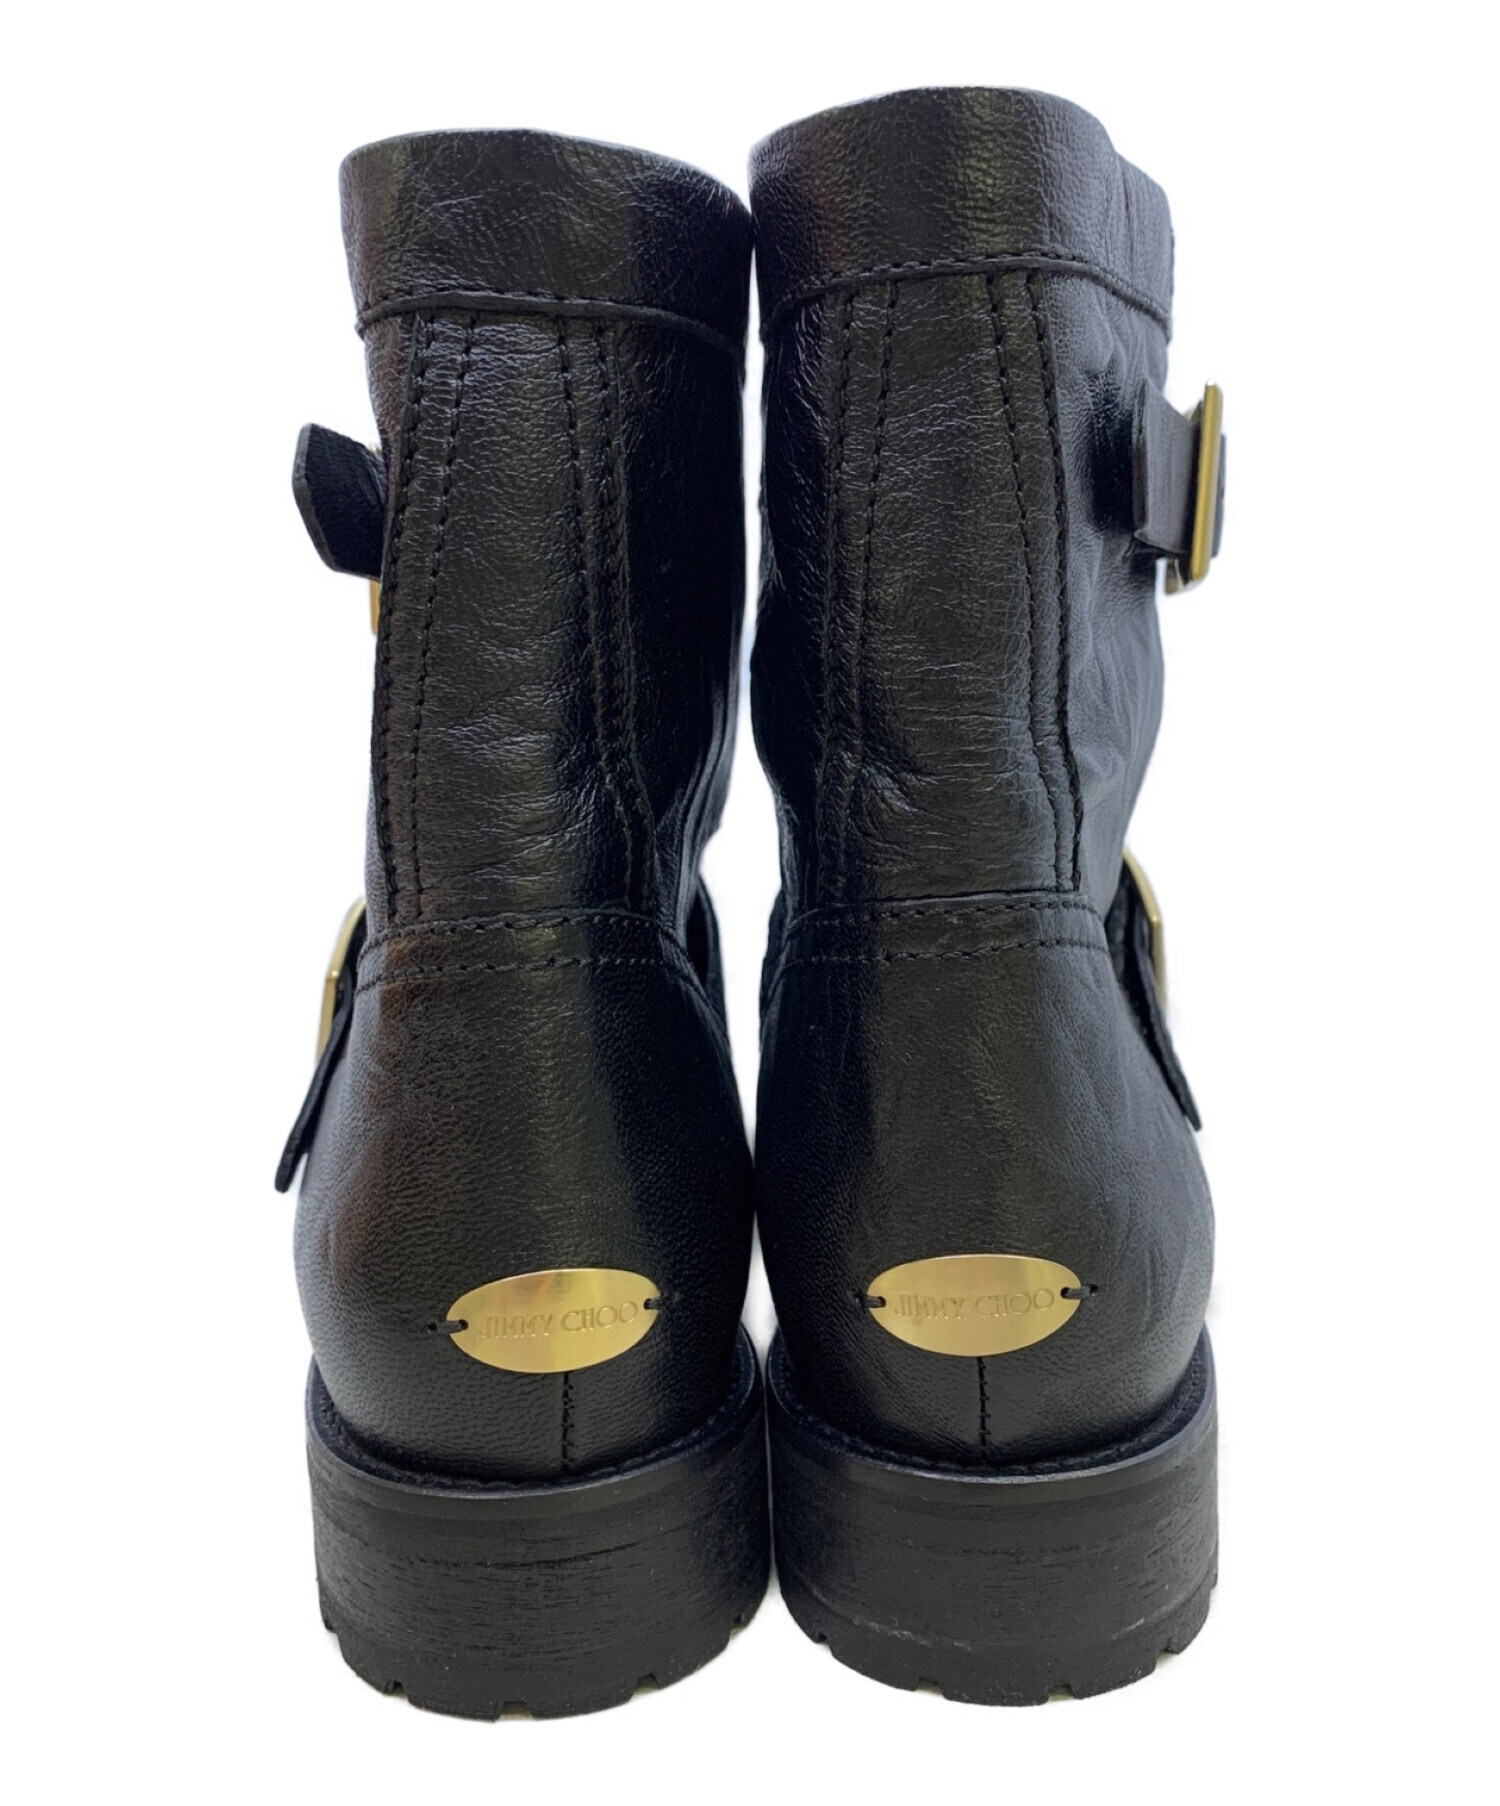 ジミーチュウ Biker II ブーツ 39.5 26.5cm 靴 タンクソール バイカー 2 スムースレザー ムートン ゴールド金具 ブラック ナチュラル 黒 193BIKER II.OHI JIMMY CHOO（新品・未使用品）